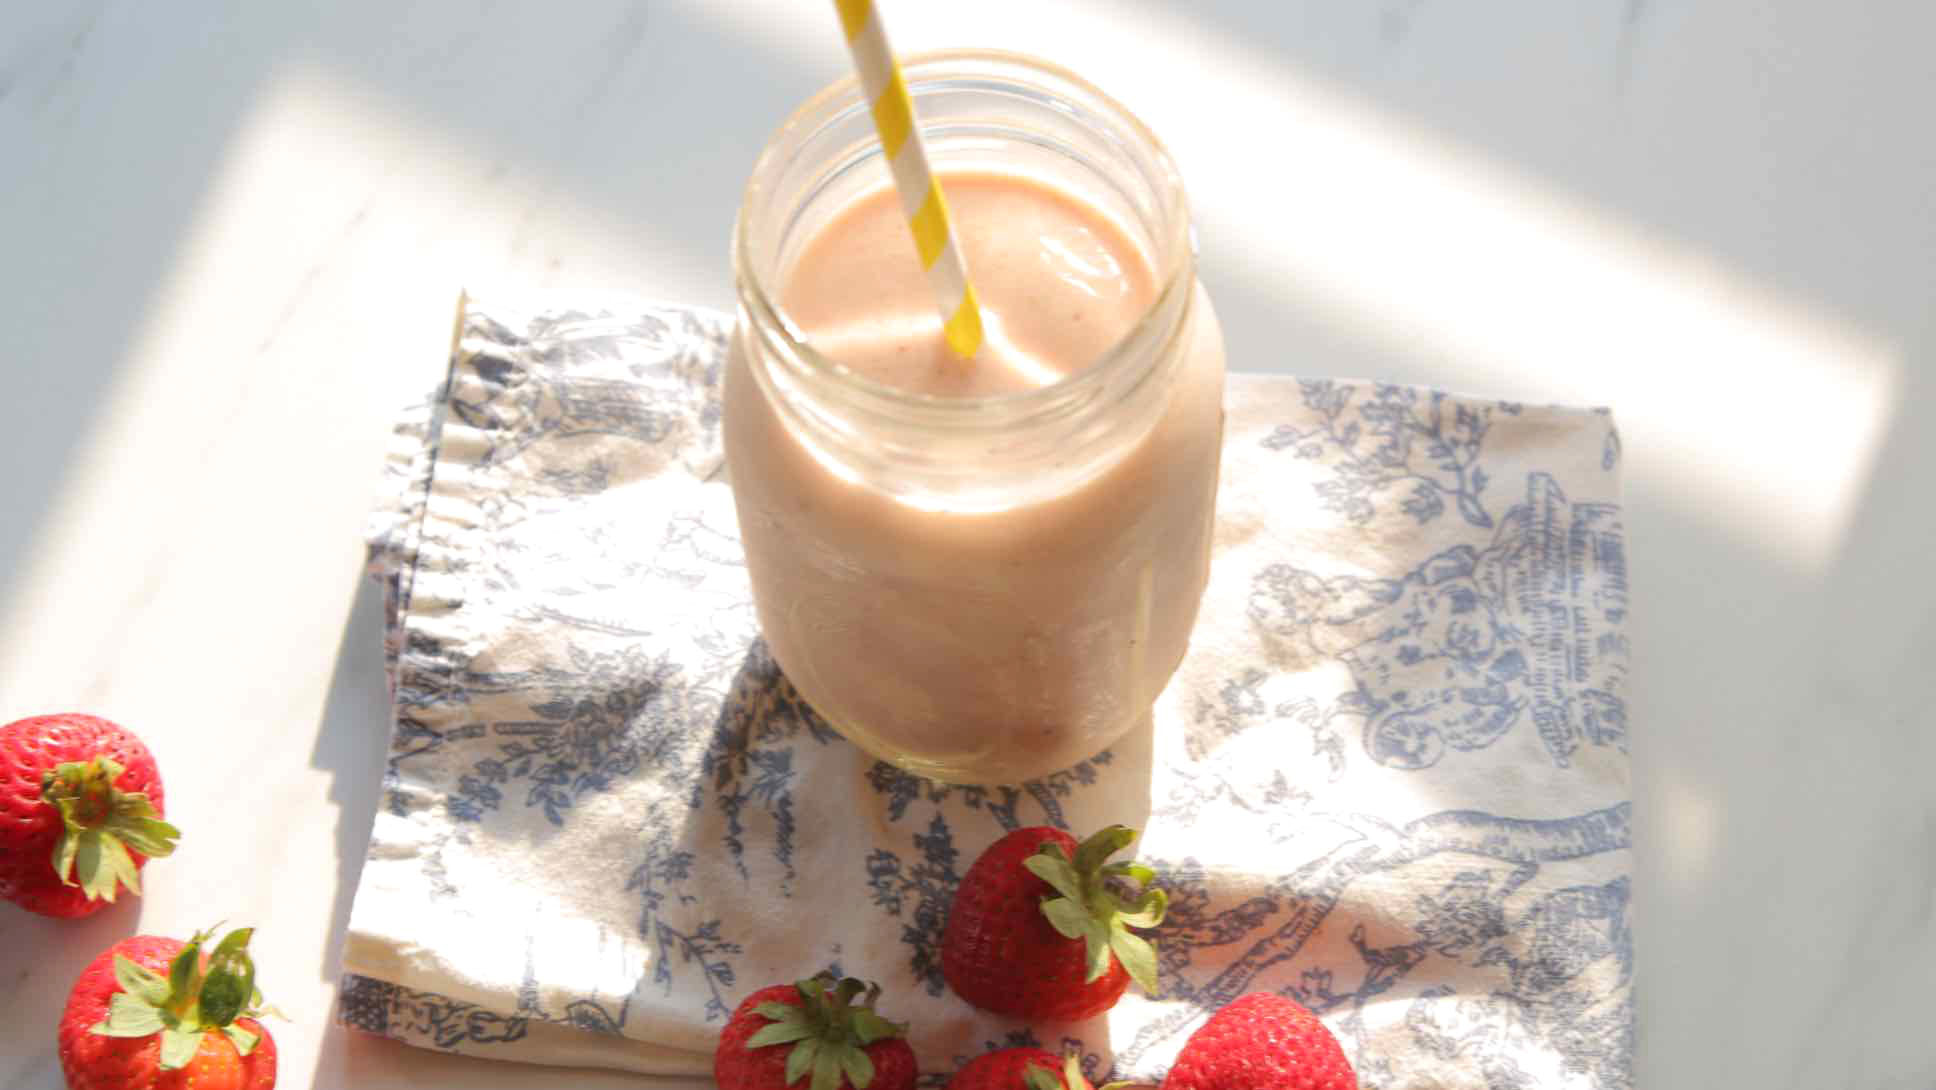 Strawberry cream shake